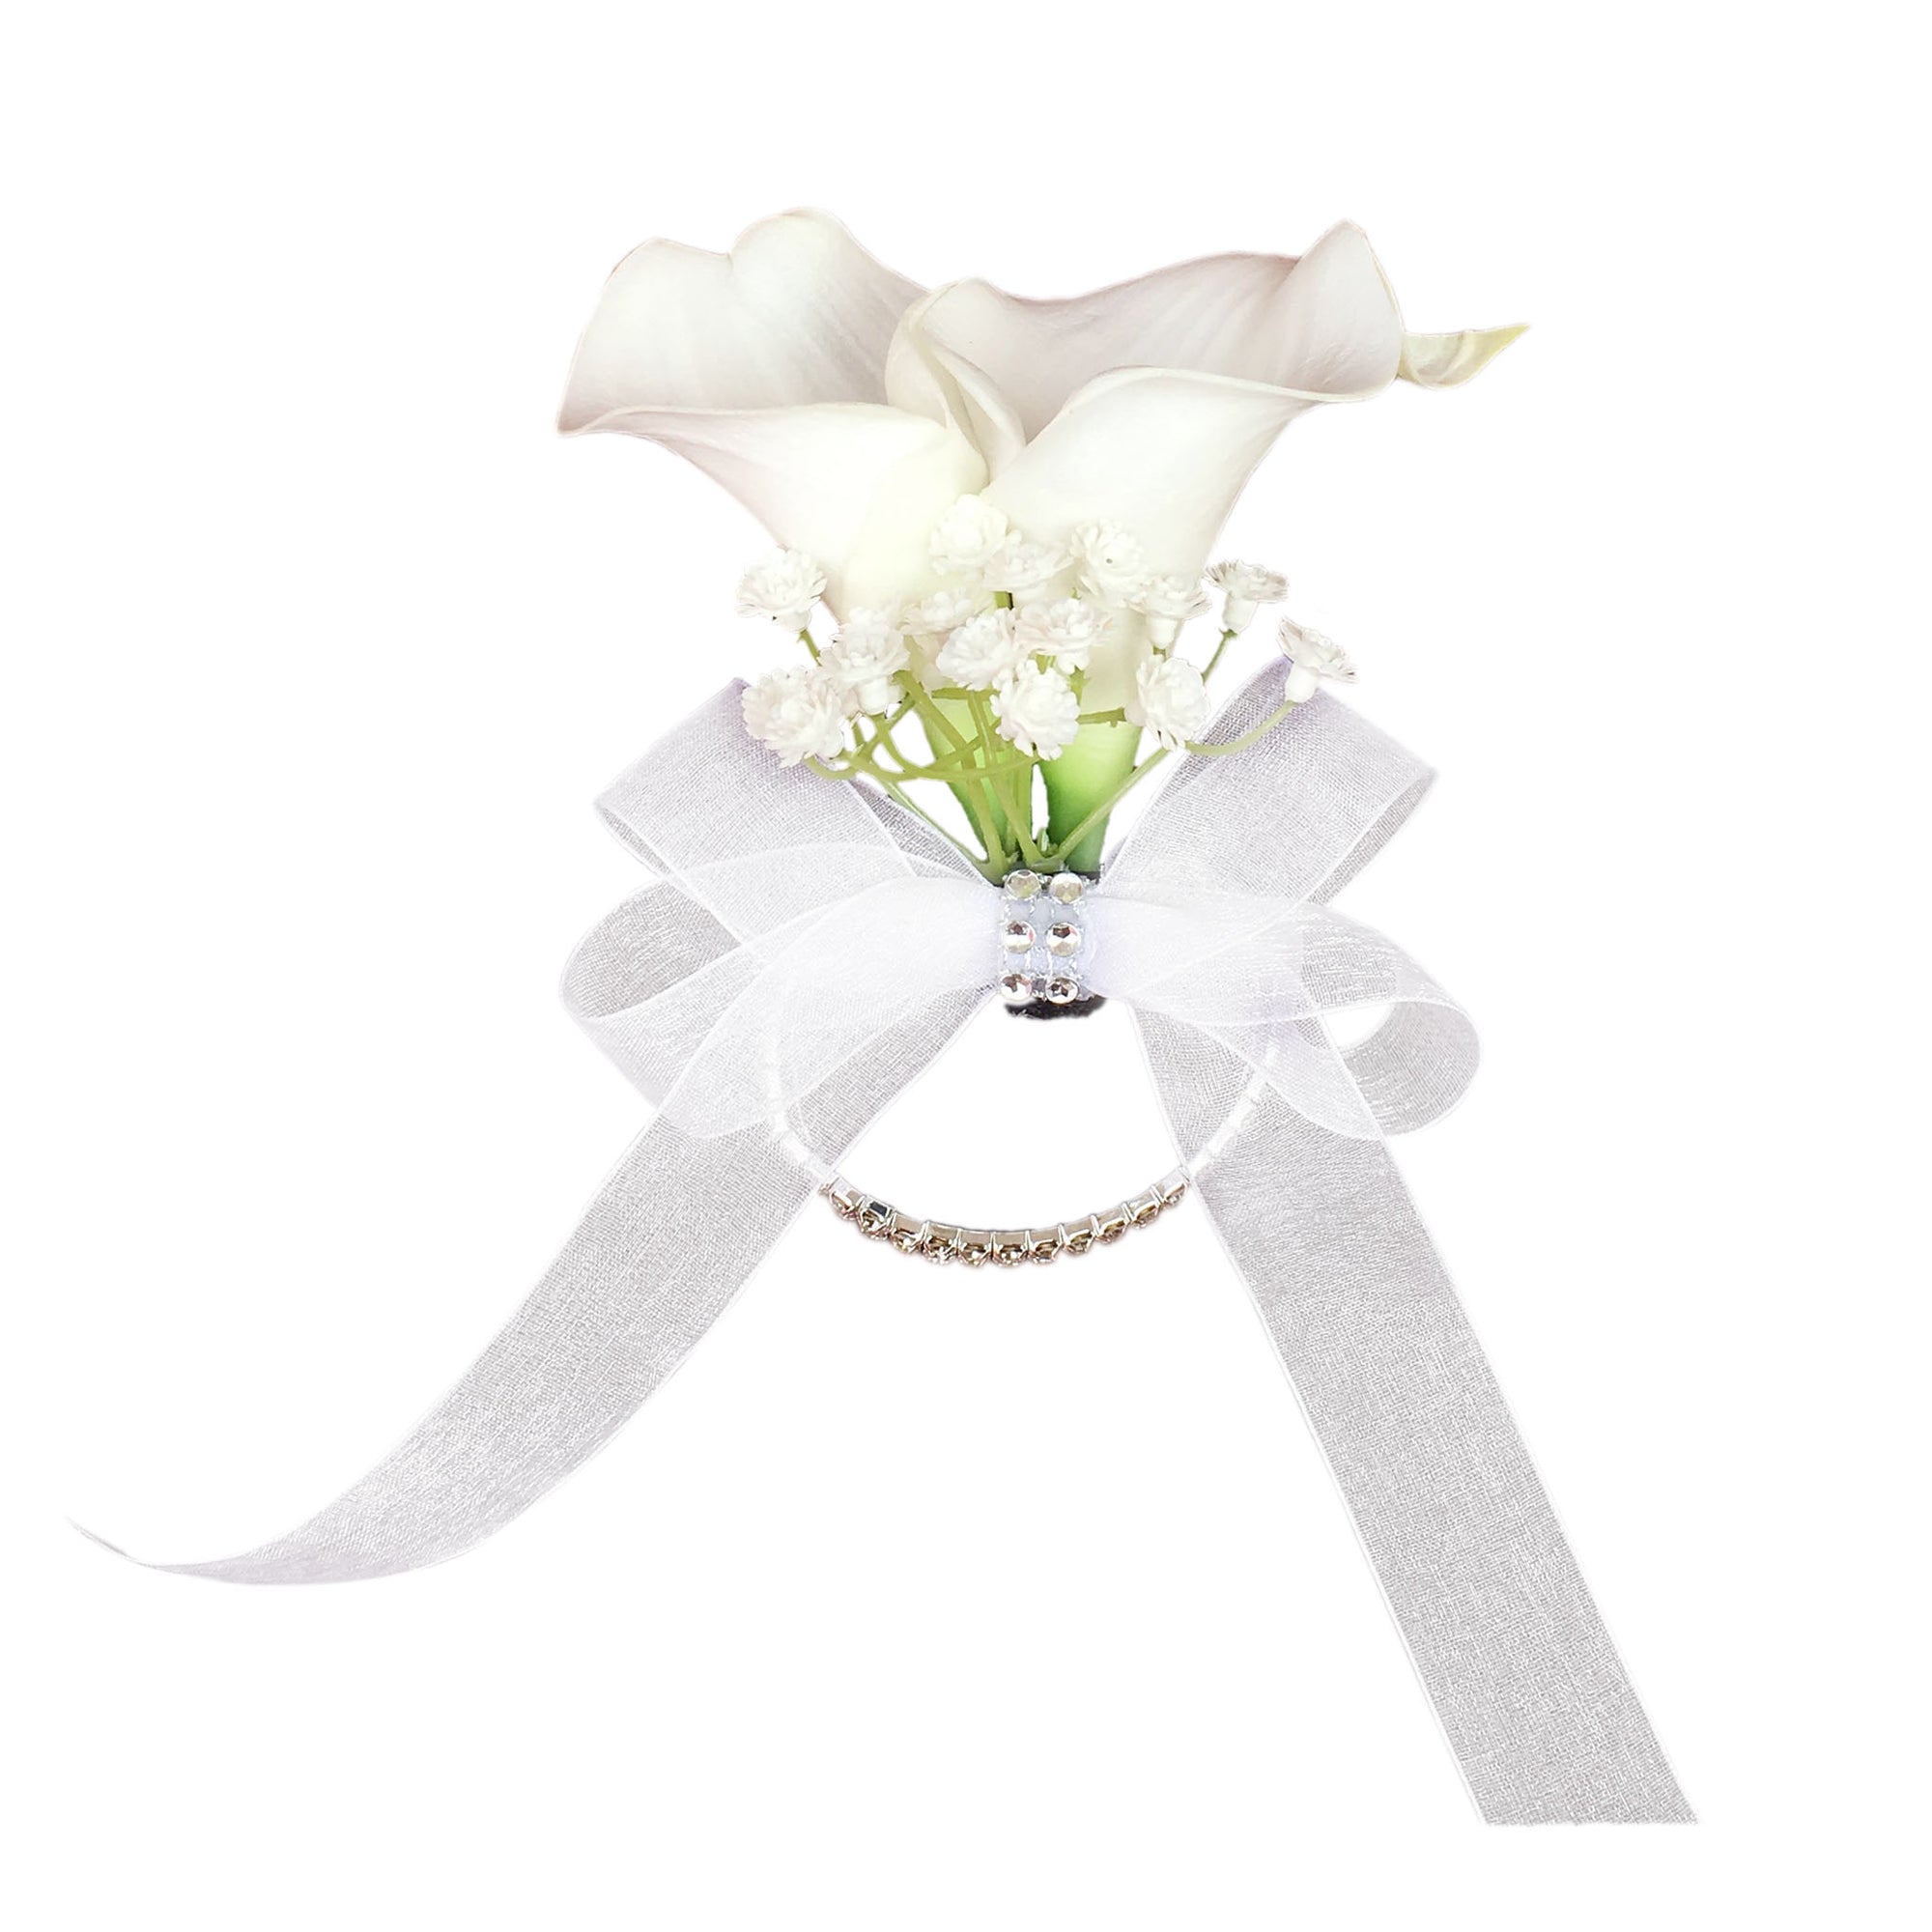 White Calla Lily Wrist Corsage for Wedding